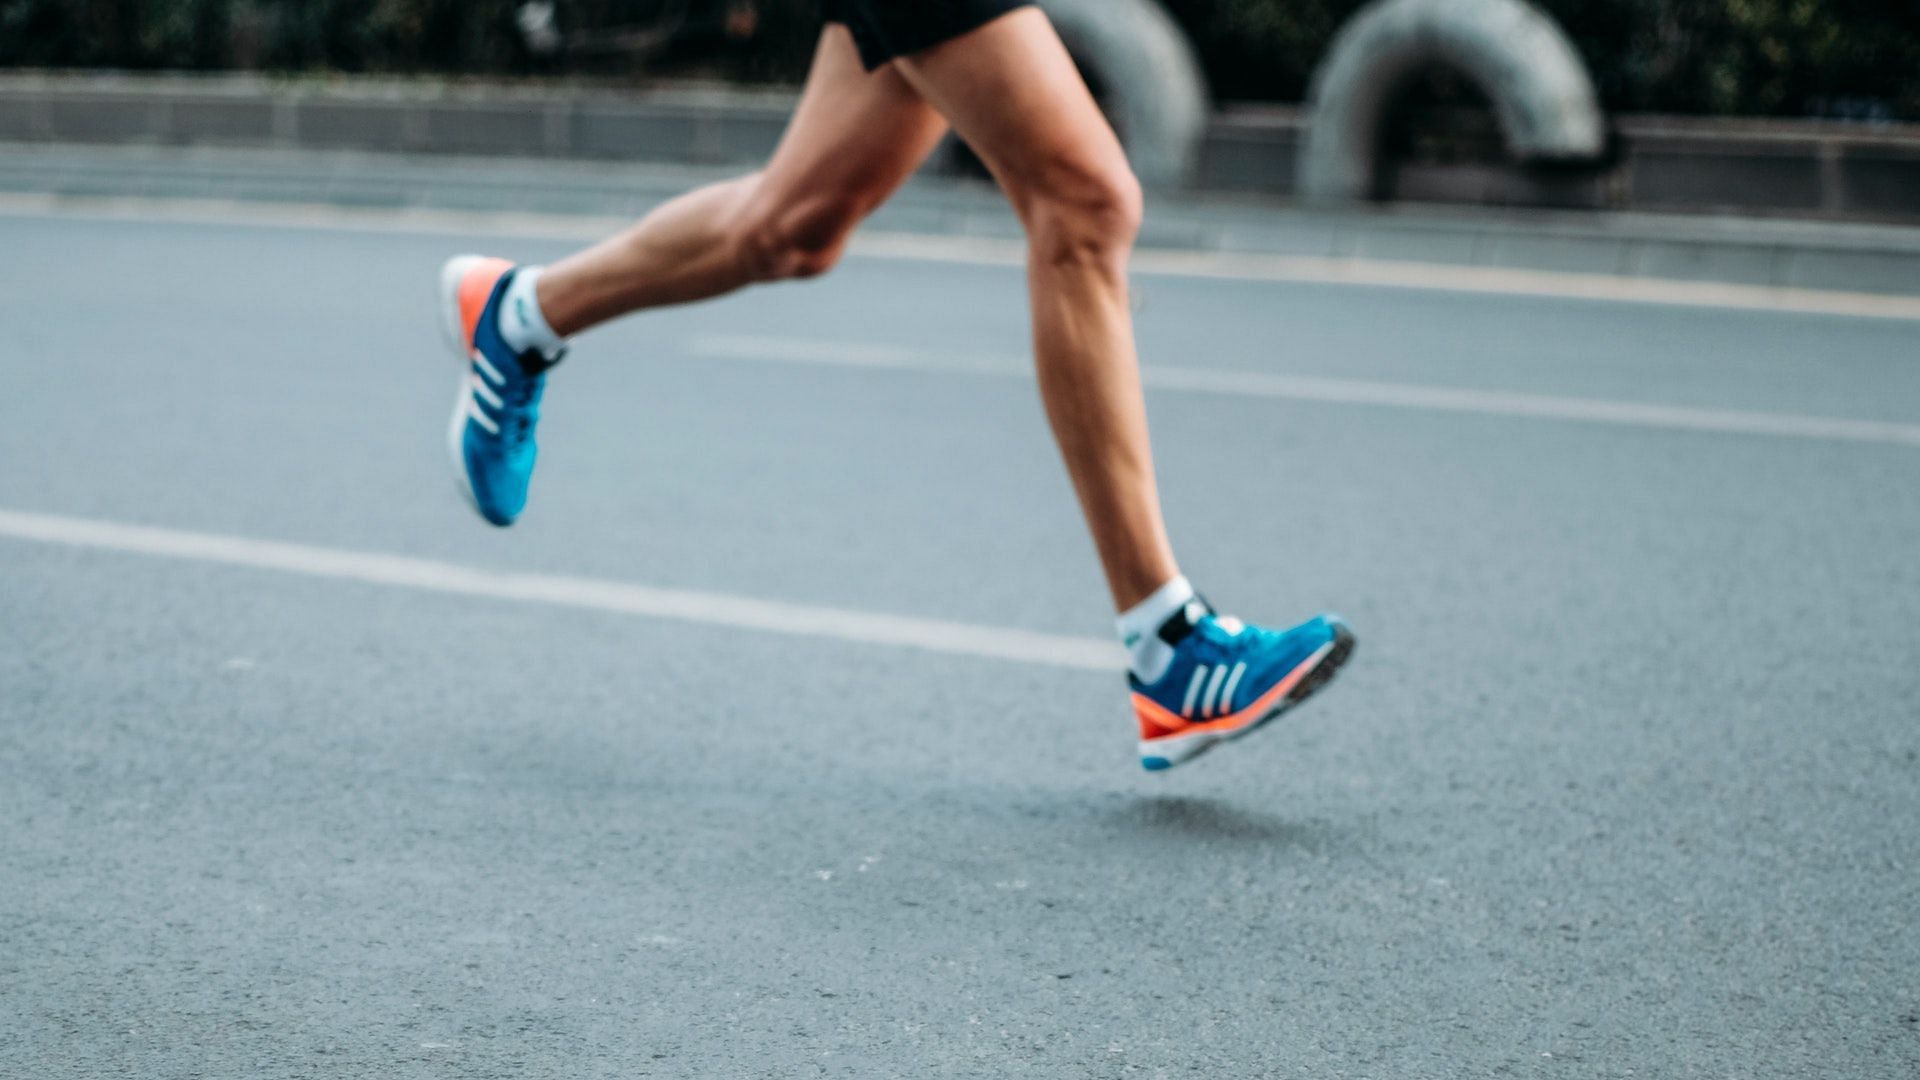 Do dorsiflexed ankles allow for better running? Image via Unsplash/Sporlab